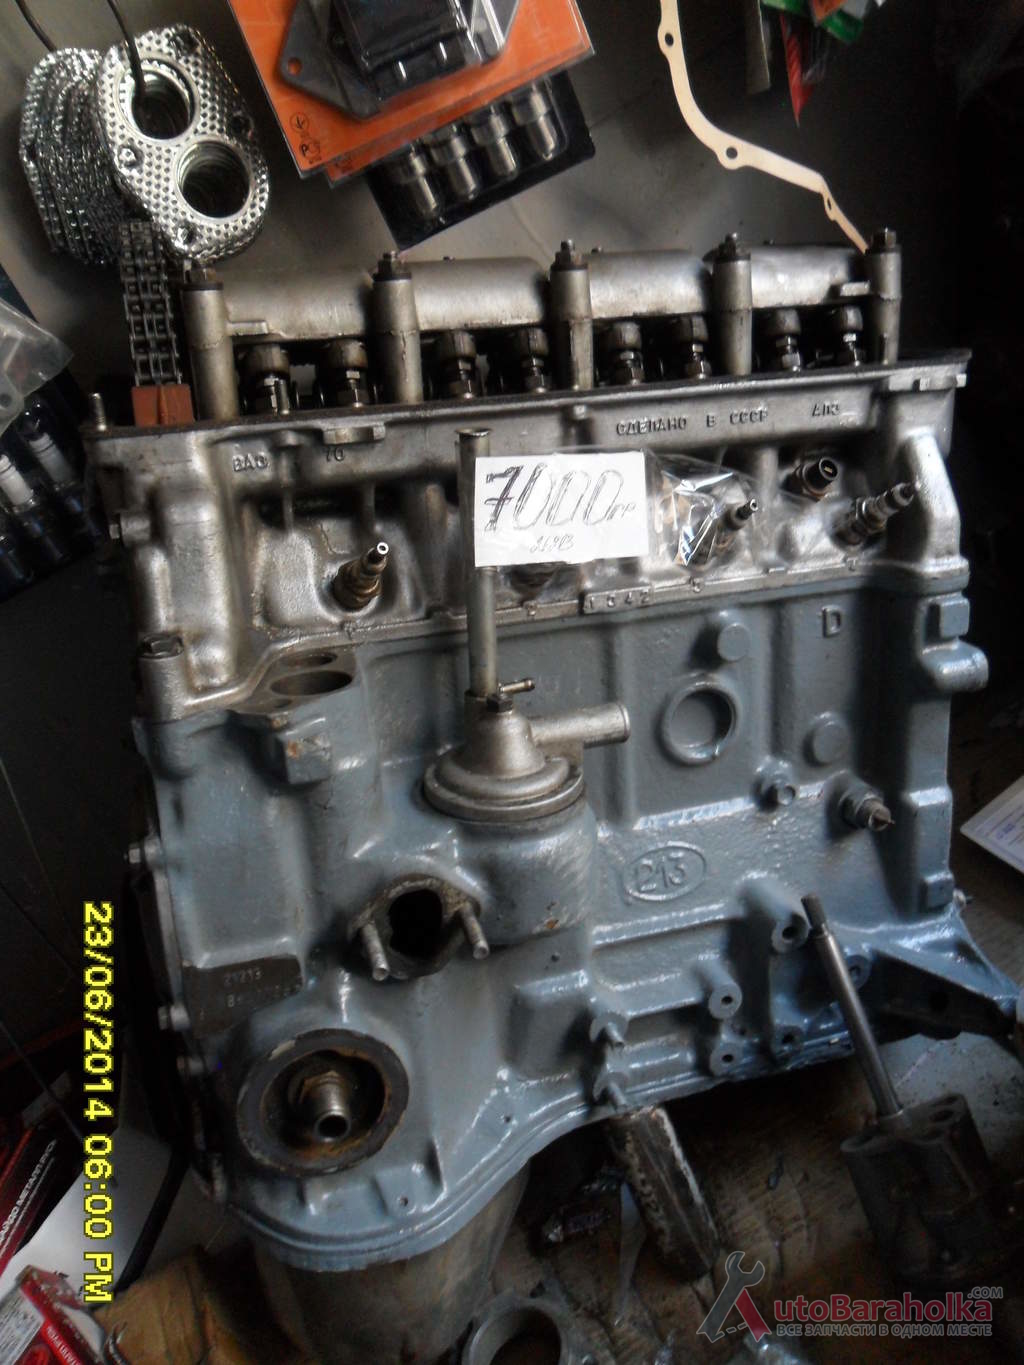 Продам Двигатель ВАЗ 21213 нива тайга с экспортных машин. малый пробег. оригинальные детали. Гарантия Херсон